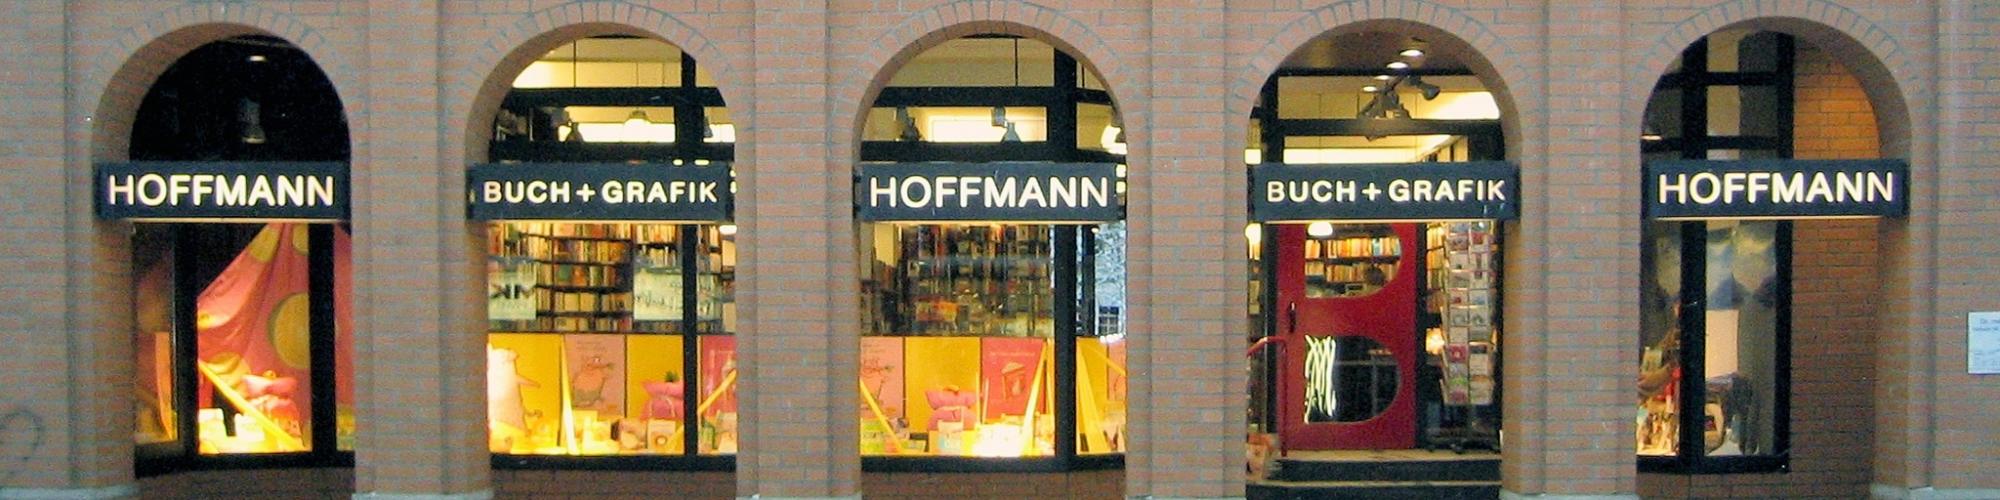 Buchhandlung Hoffmann